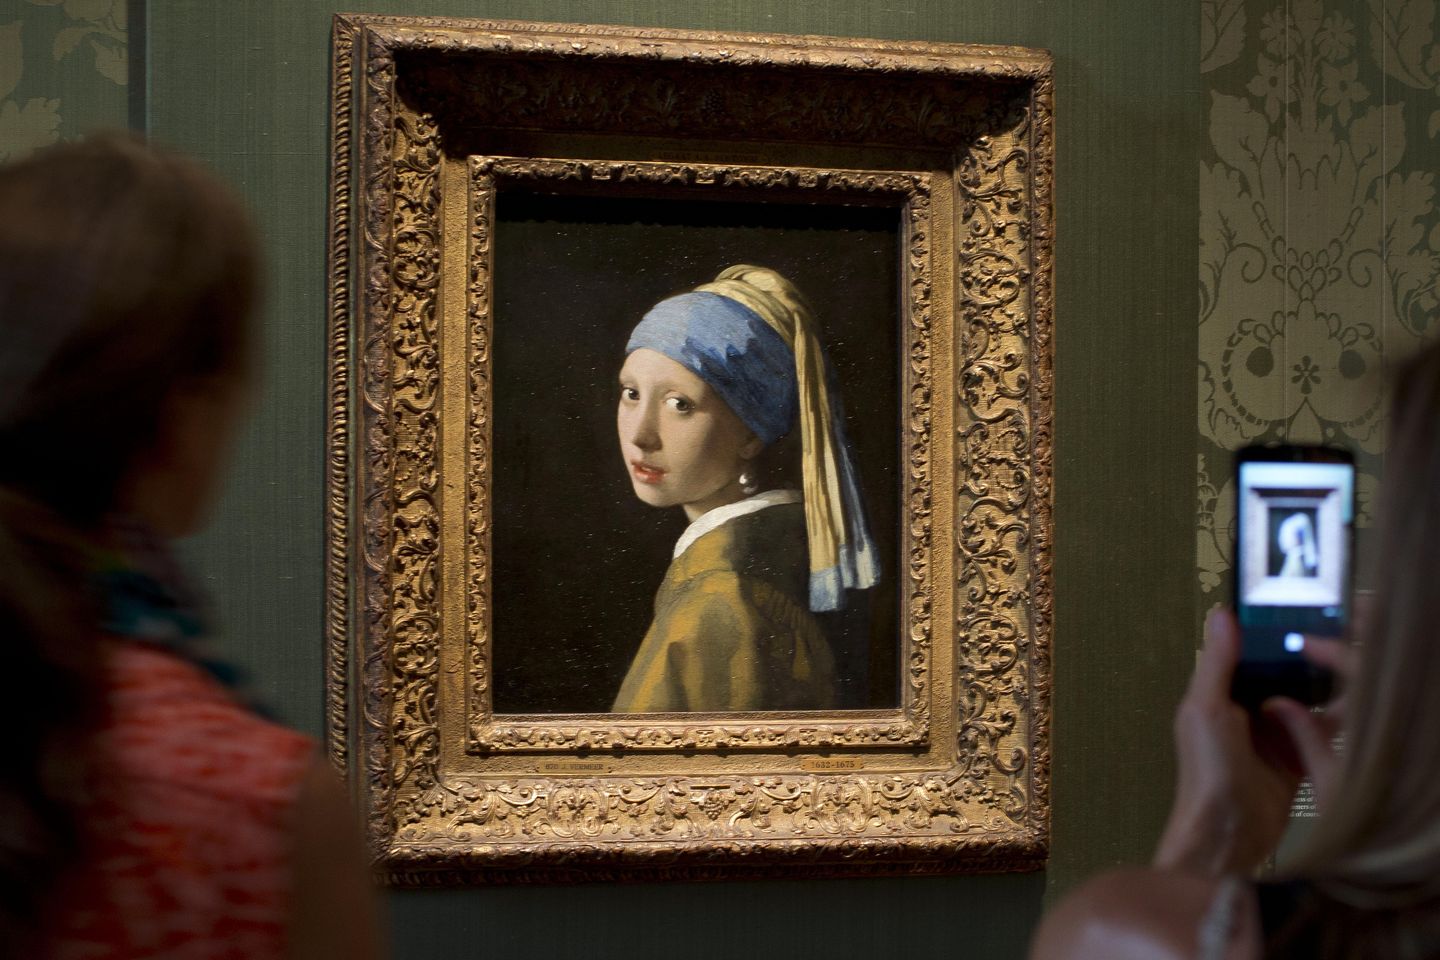 İklim aktivistleri, Vermeer'in Hollanda'daki 'İnci Küpeli Kız'ına saldırılarla yeniden grevde